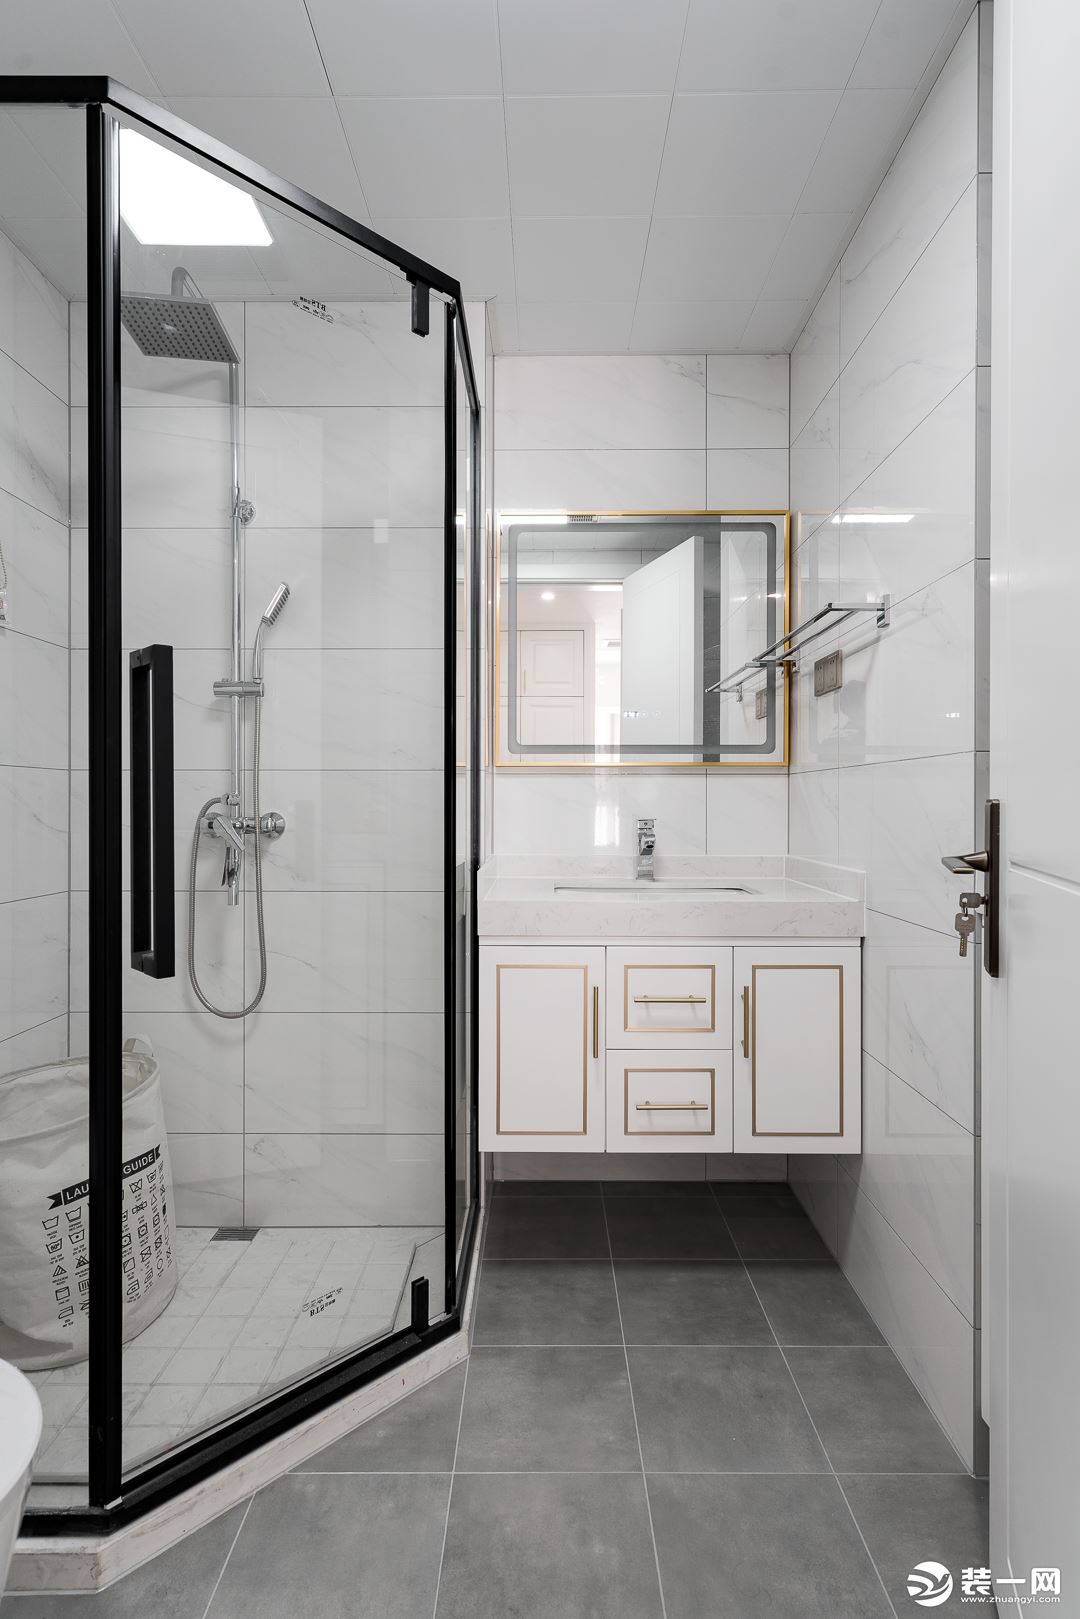 卫浴空间以白色瓷砖与花灰色地砖搭配，整体保持简单清爽的氛围。浴室柜的金边和淋浴房的黑框形成“黑金”。